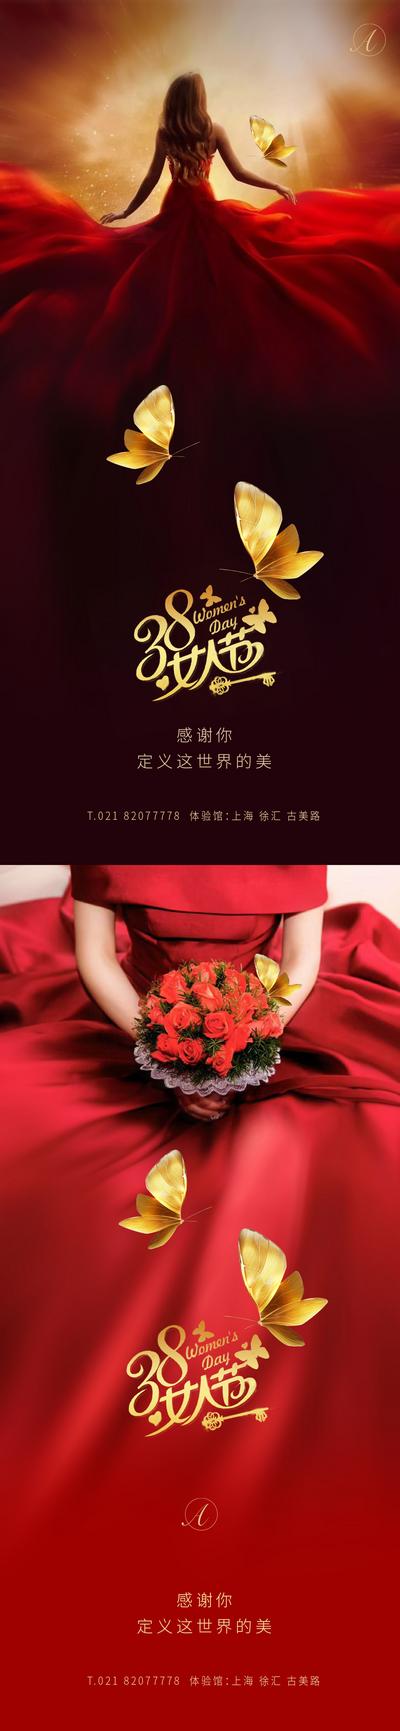 南门网 海报 公历节日 38 妇女节 女人节 女神节 蝴蝶  创意